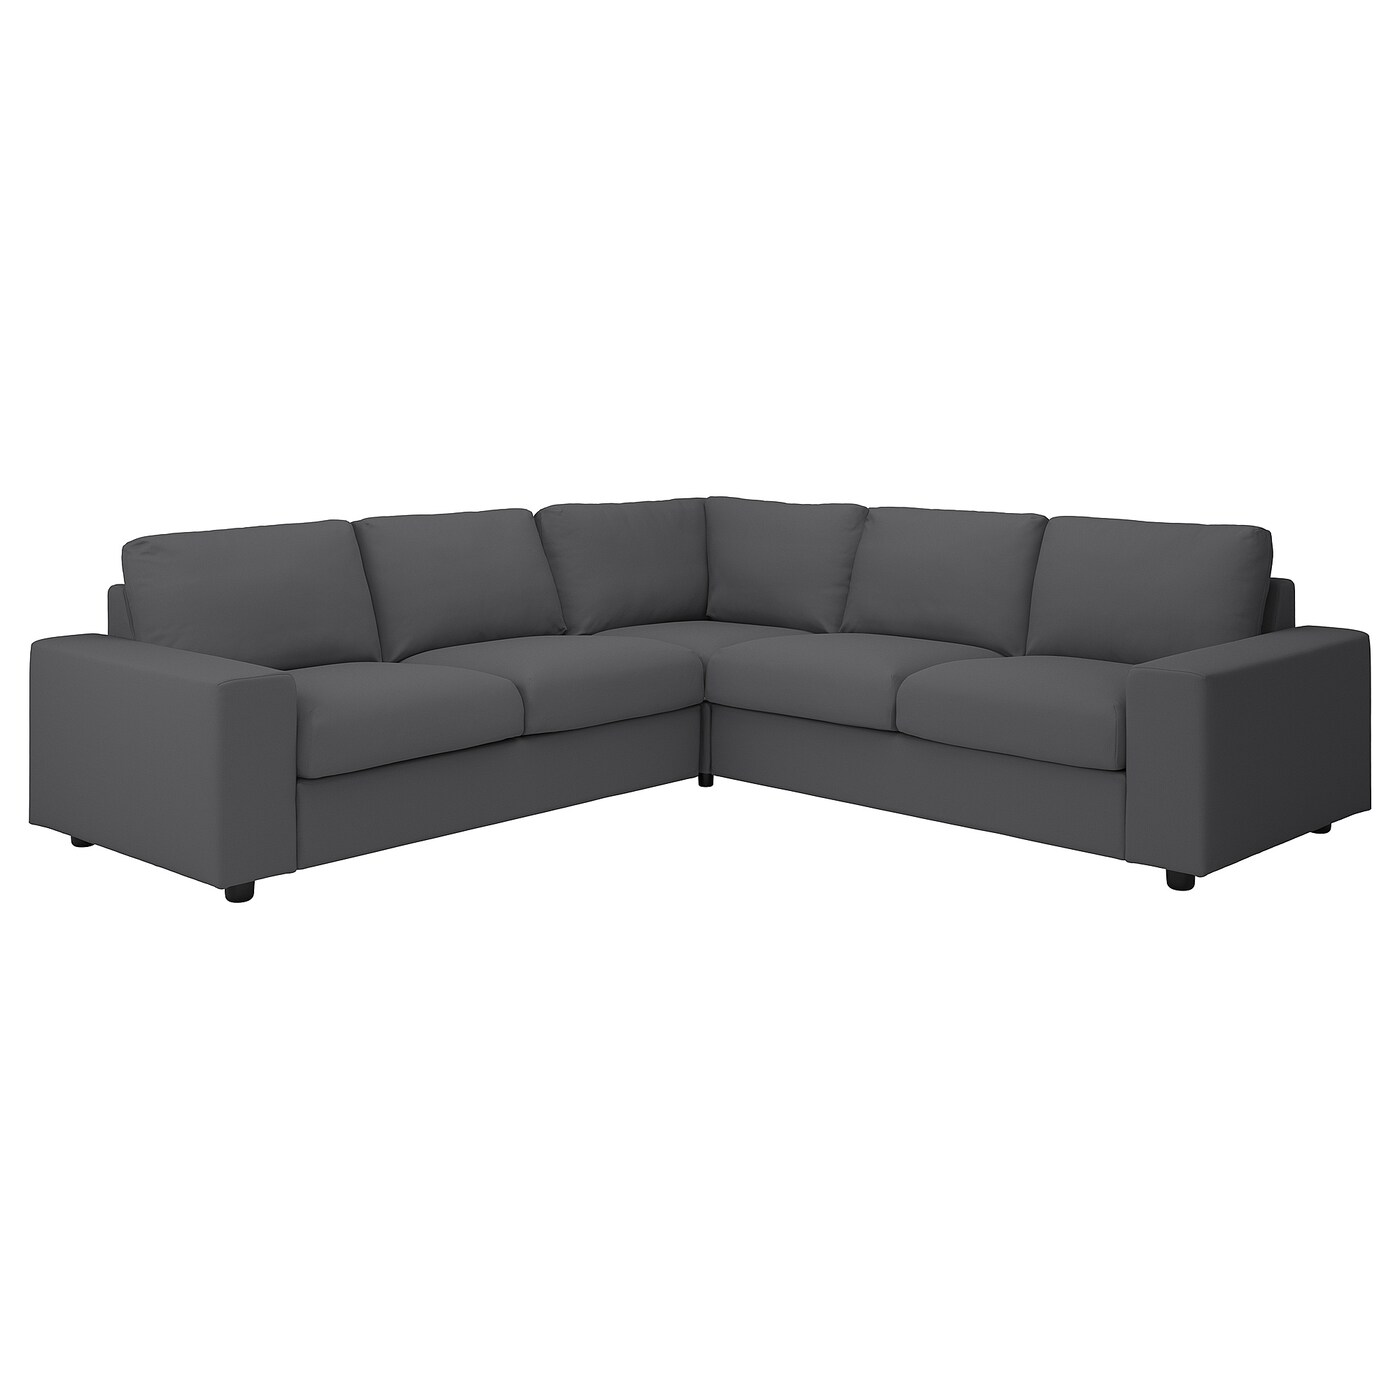 ВИМЛЕ 4-местный угловой диван, с широкими подлокотниками/Халларп серый VIMLE IKEA